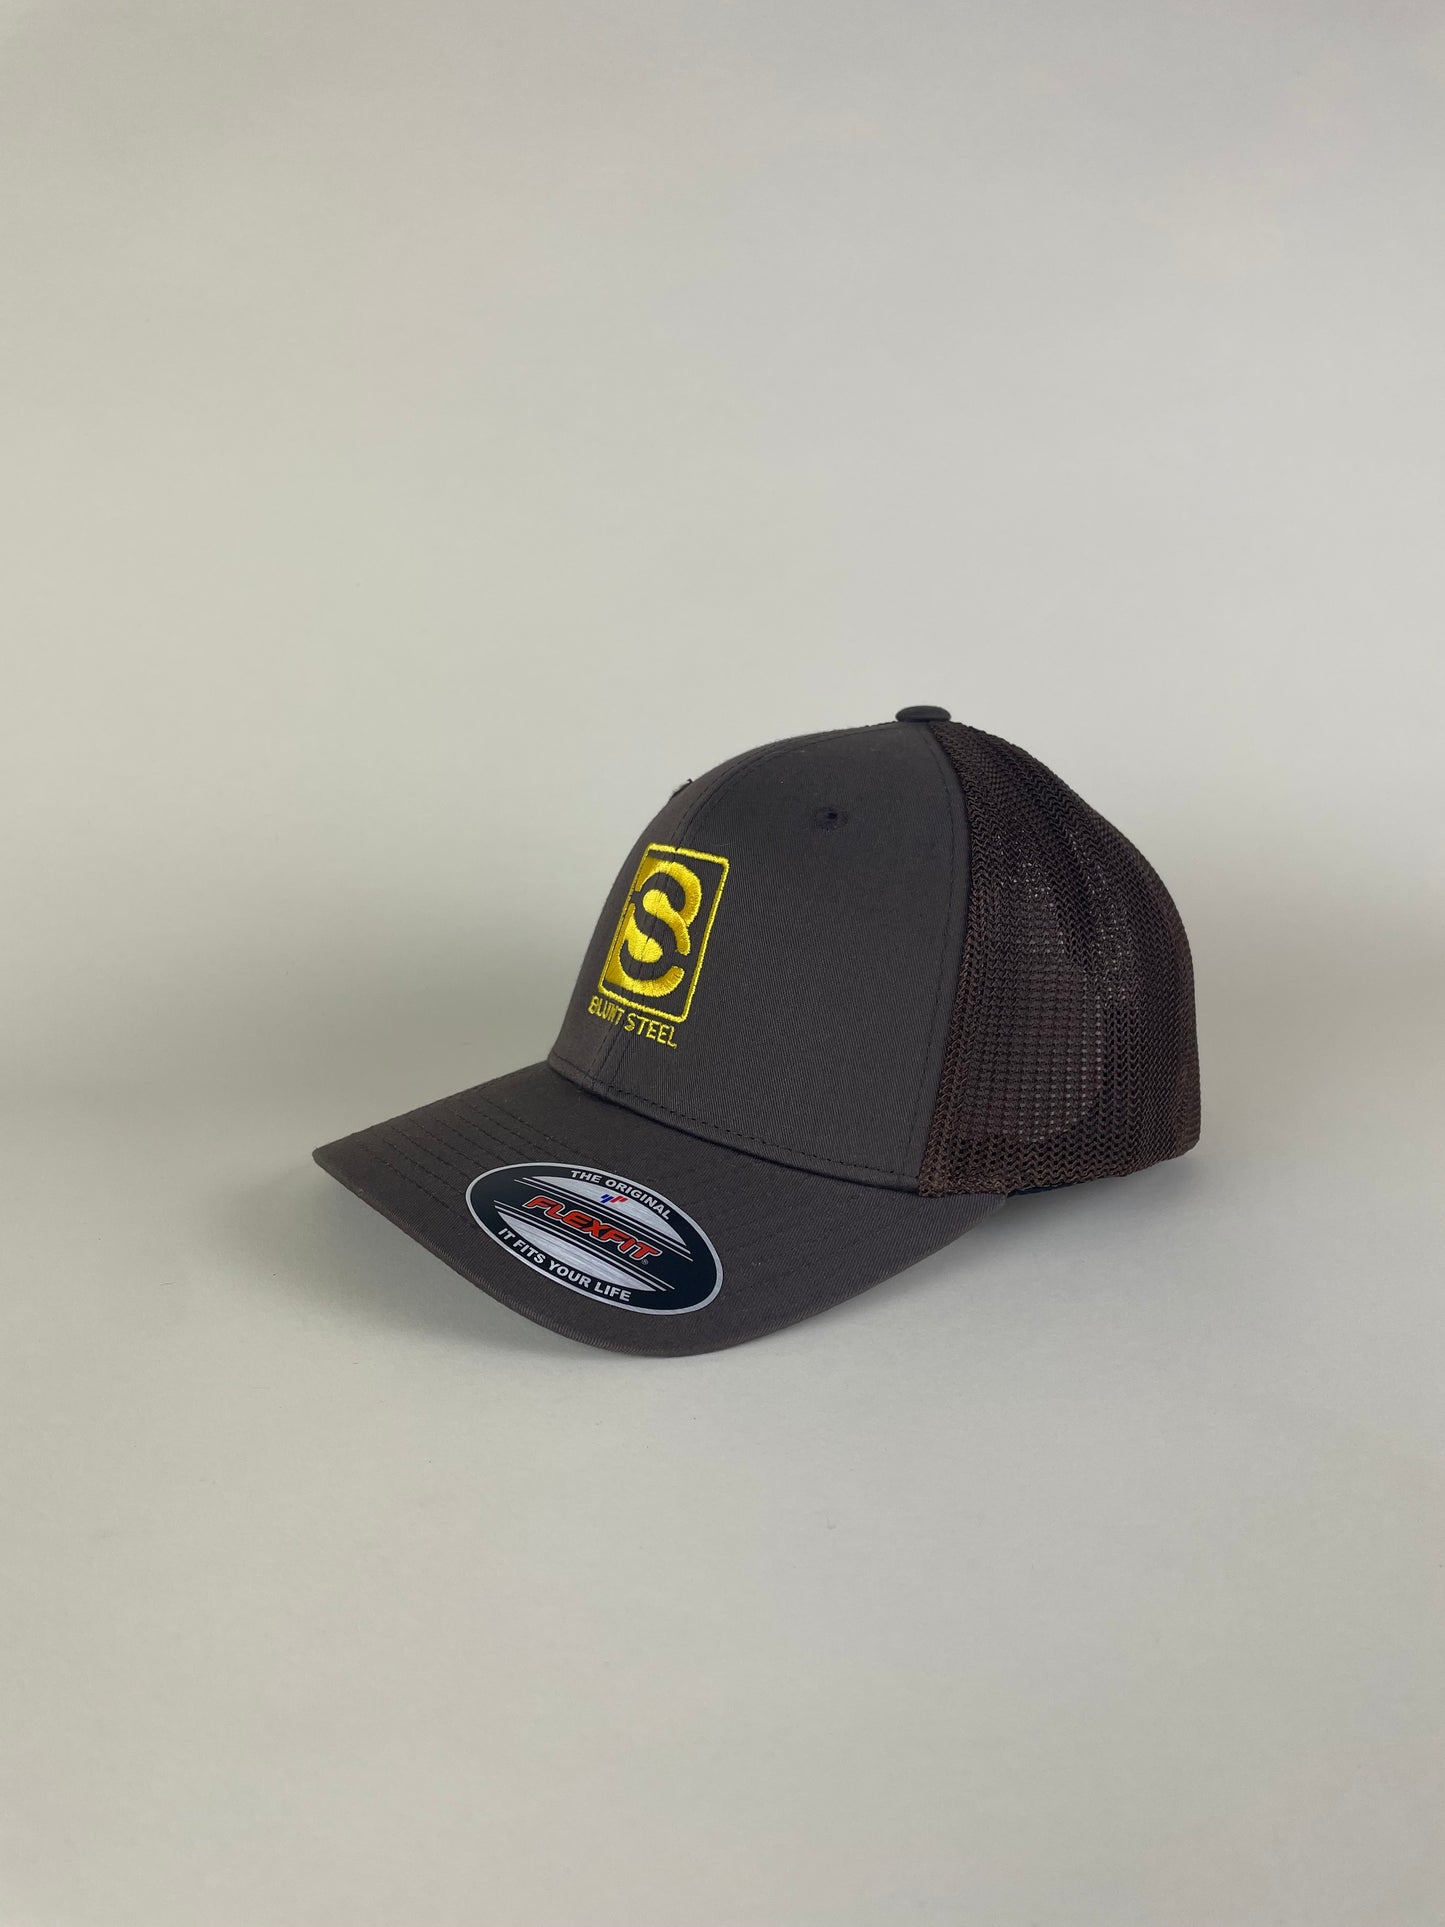 Blunt Steel “SD Baseball” Hat